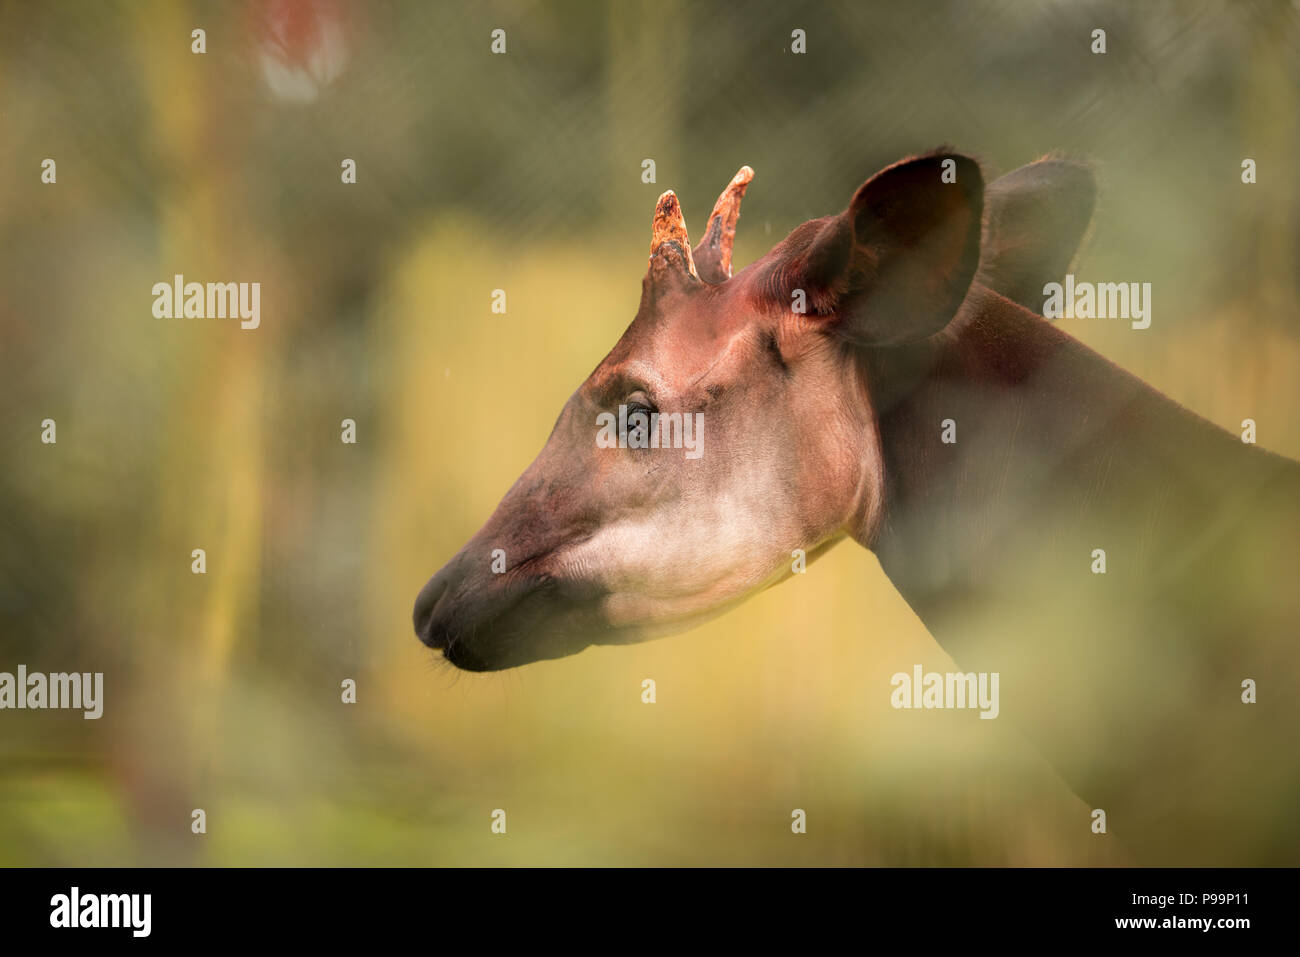 Okapi close up portrait of egsotic endangered animal Stock Photo